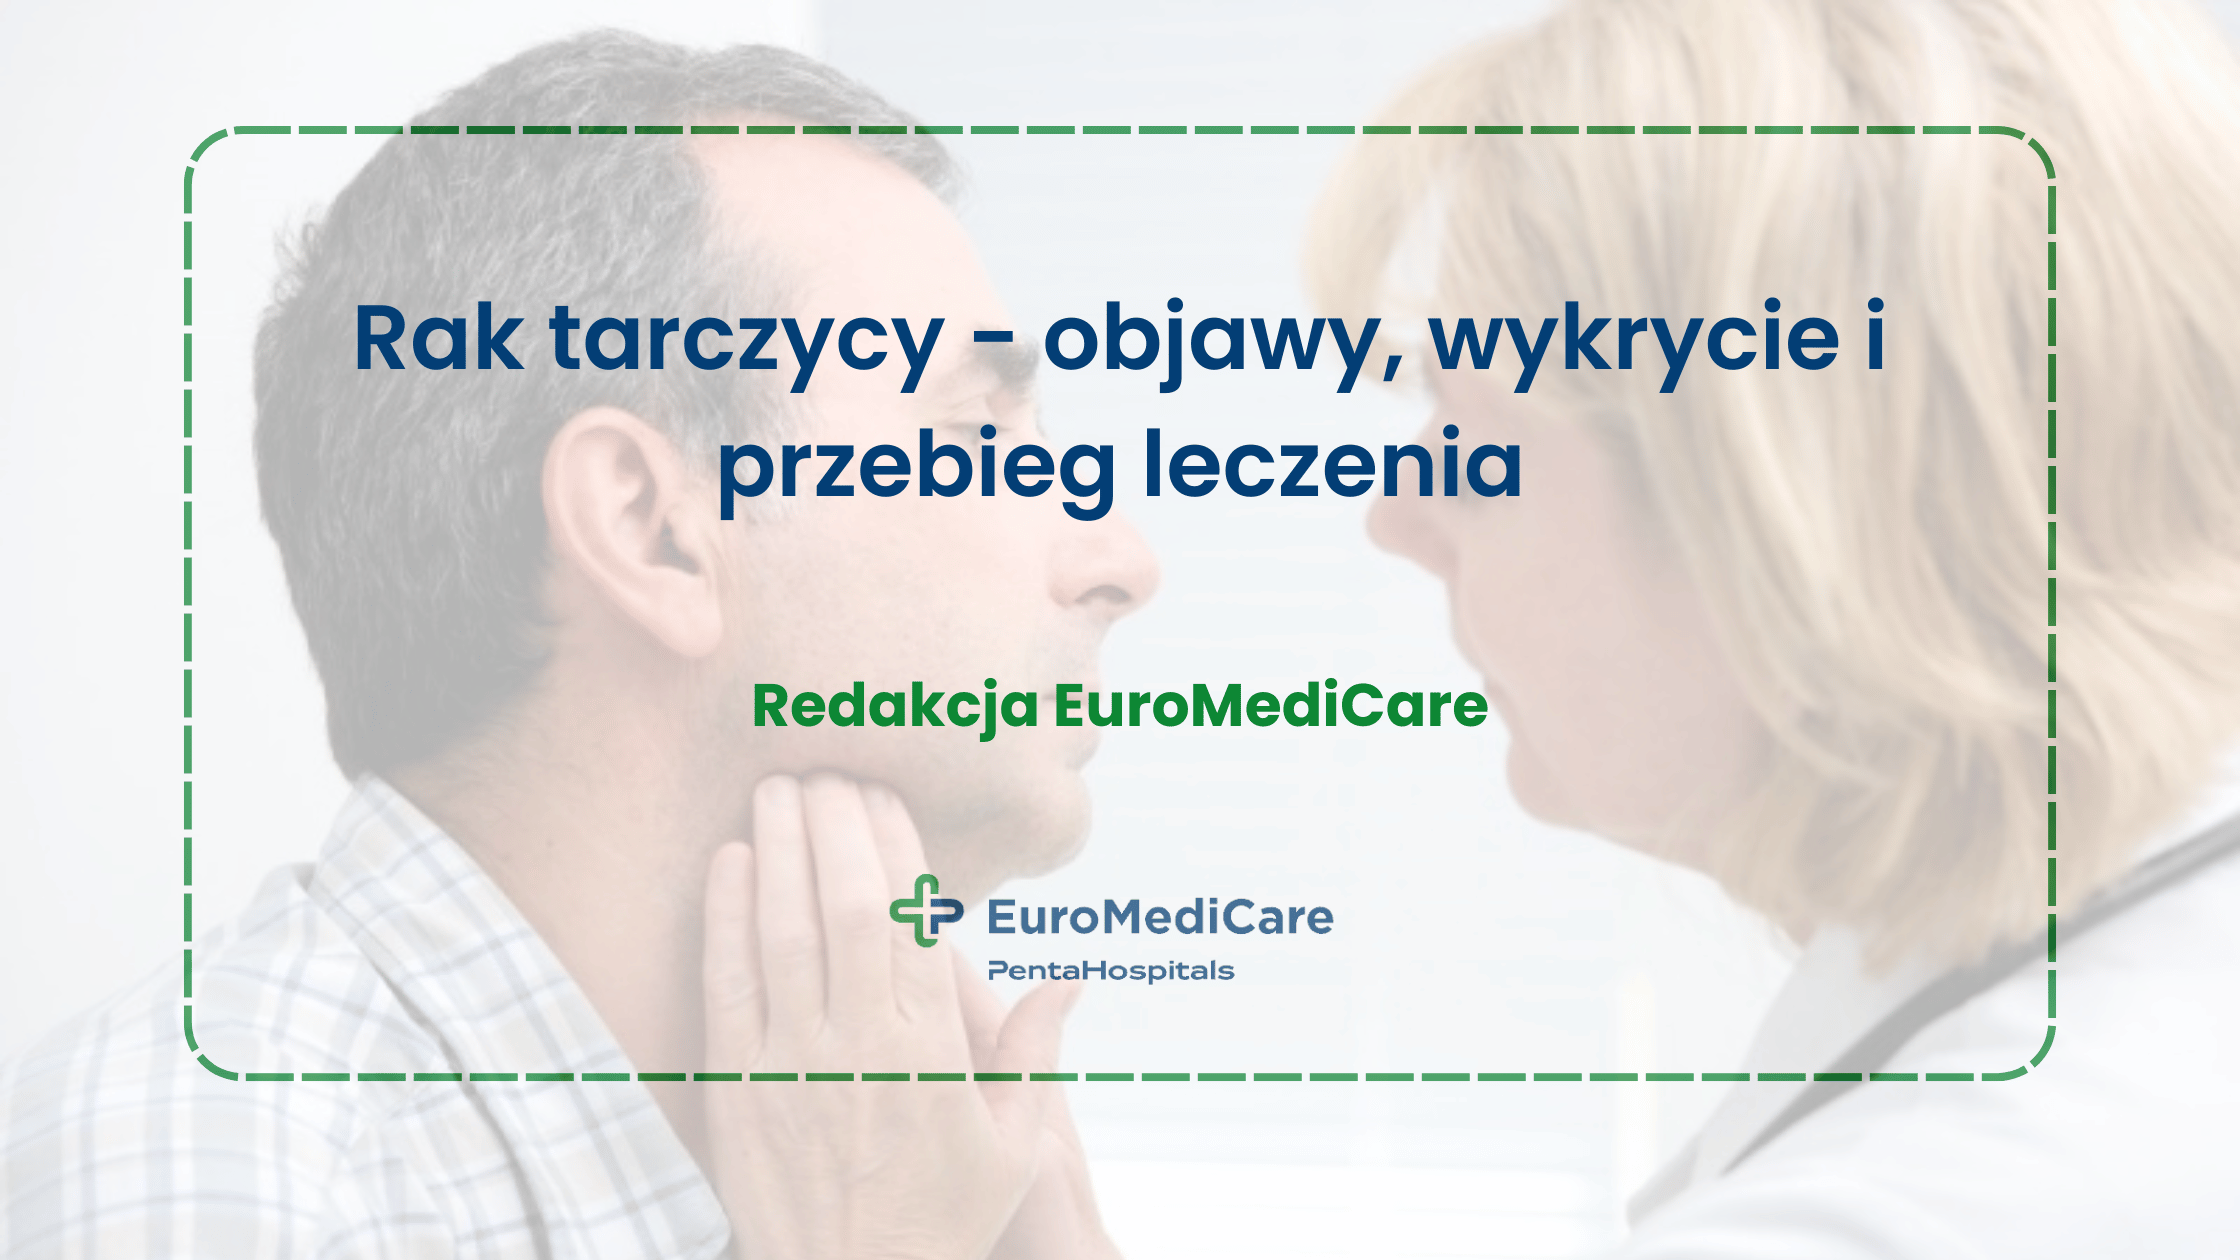 Rak tarczycy - objawy, wykrycie i przebieg leczenia - blog euromedicare.pl